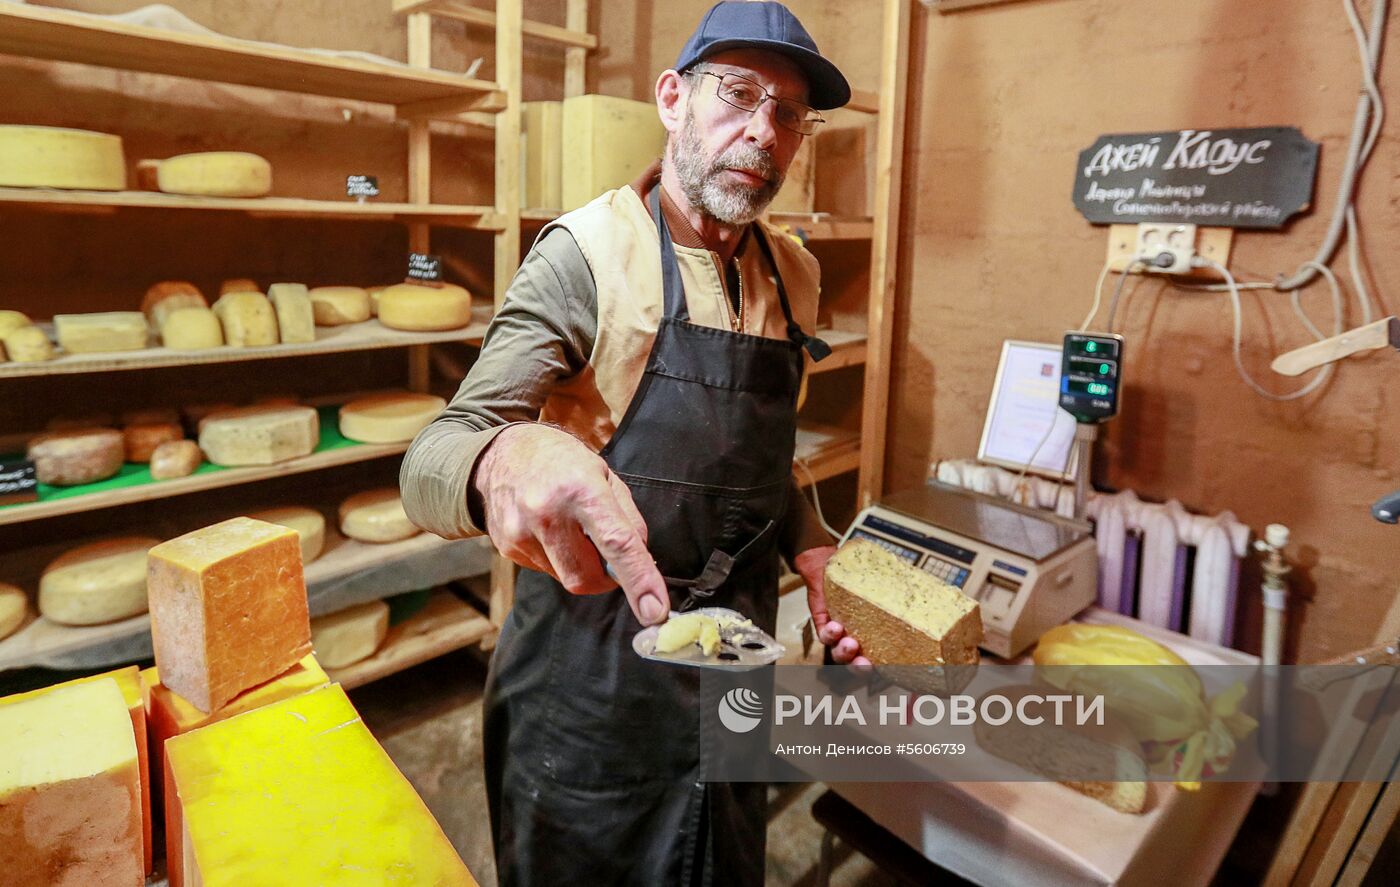 Фермерское хозяйство американца Джея Роберта Клоуза в Московской области